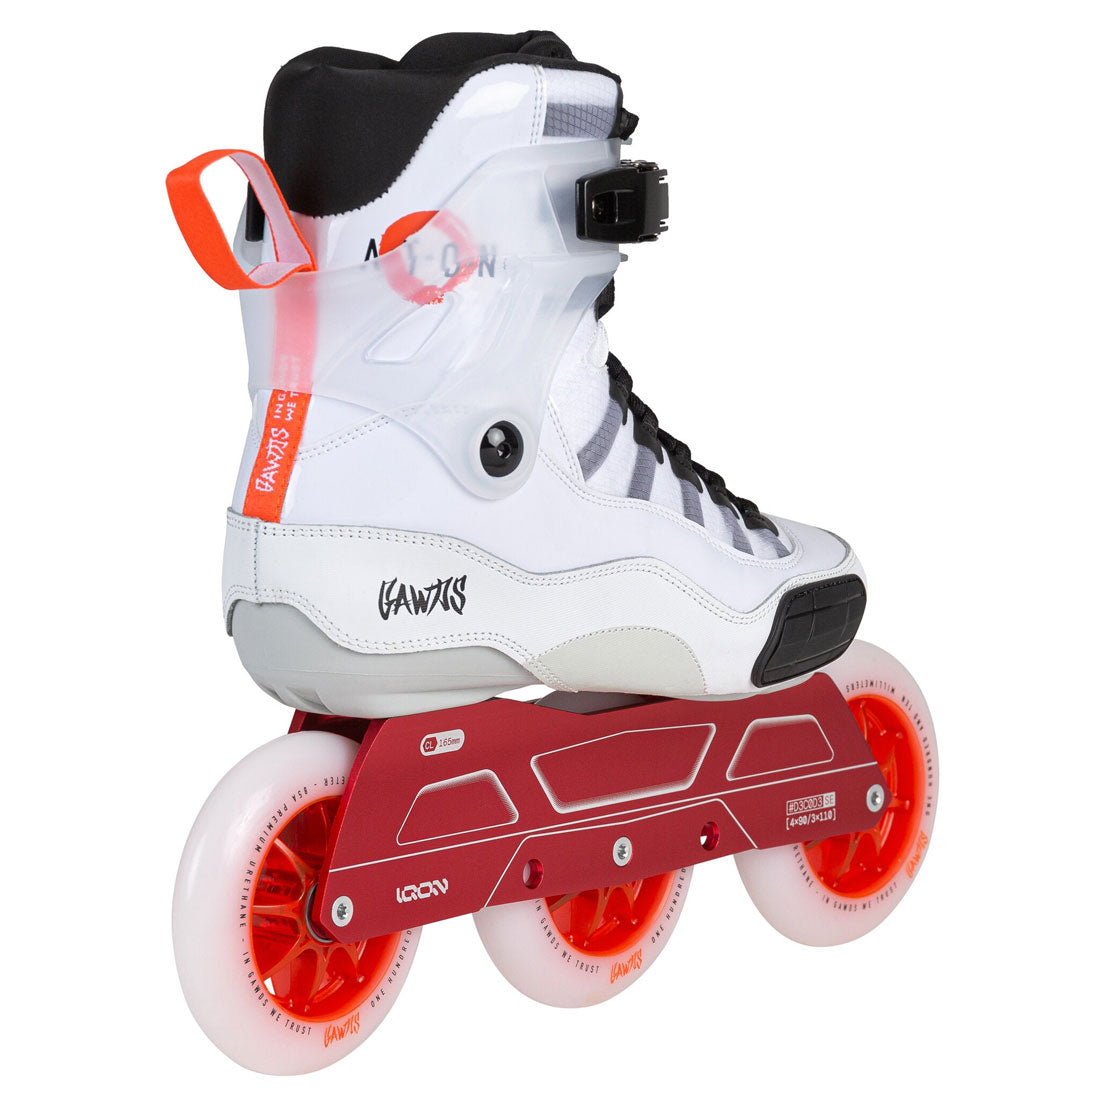 Gawds Aton Urban Skates - White/Red Inline Rec Skates